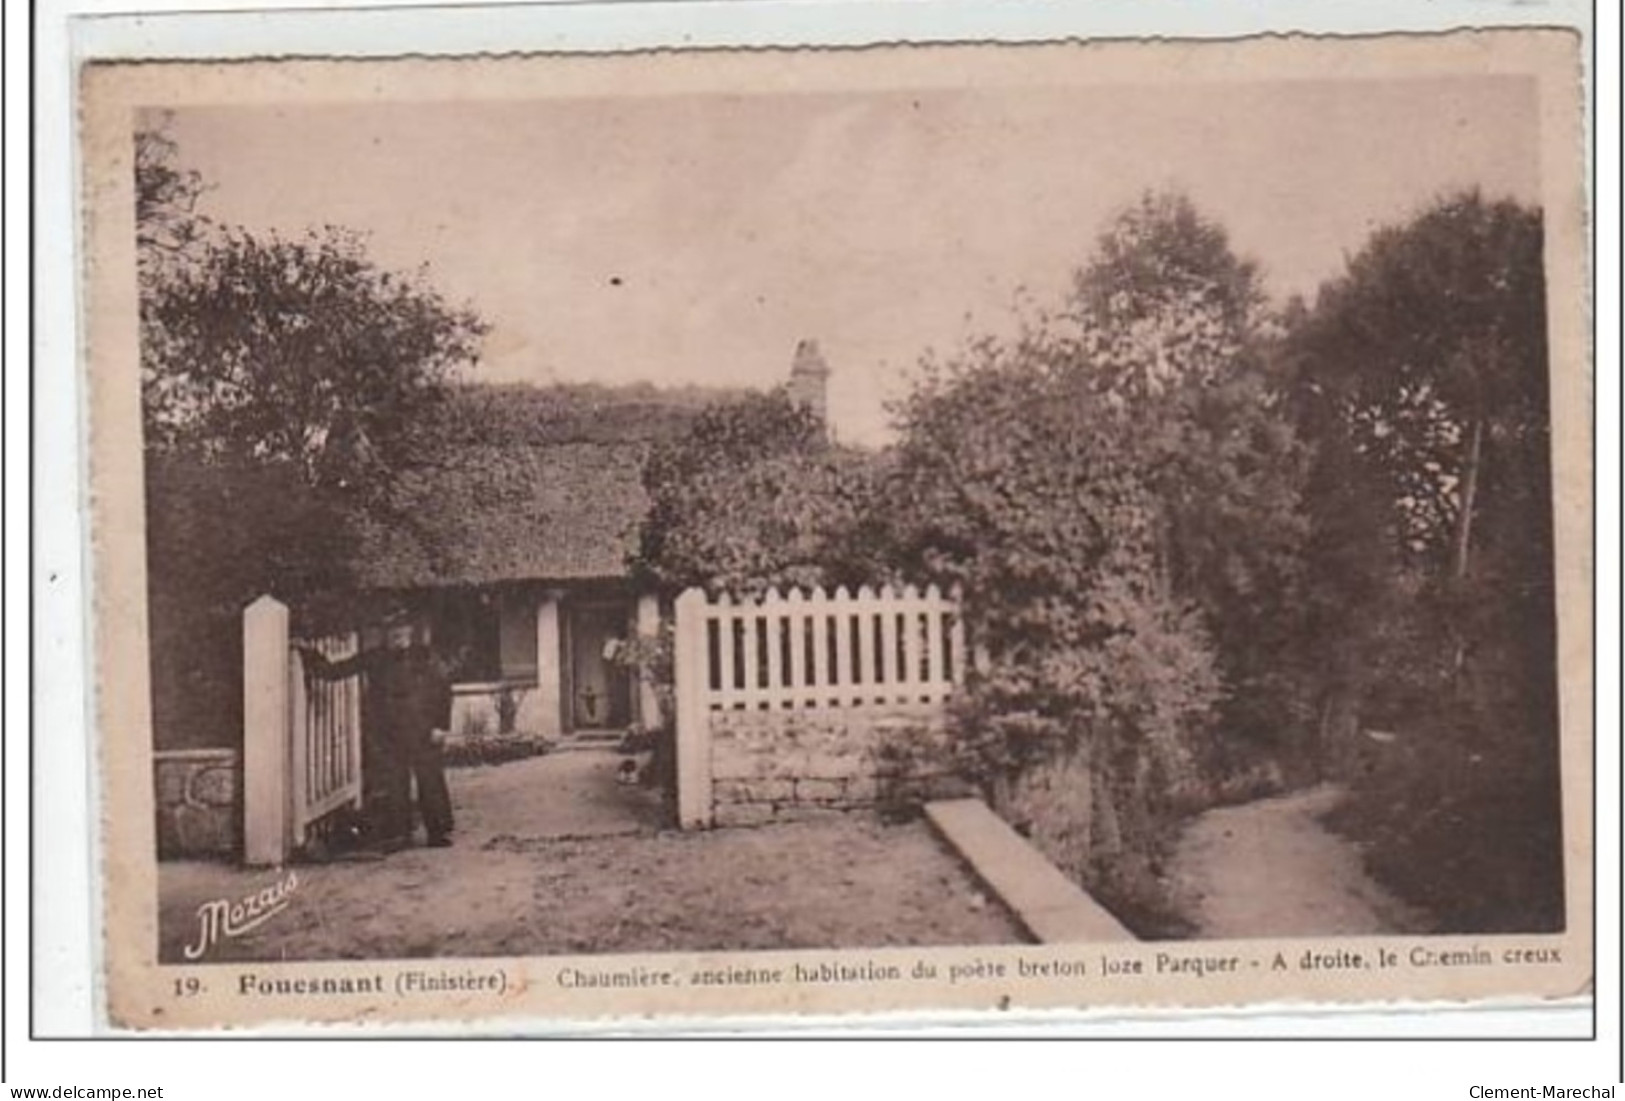 FOUESNANT : Chaumière, Ancienne Habitation Du Poète Breton Joze Parquer - à Droite,le Chemin Creux - Très Bon état - Fouesnant